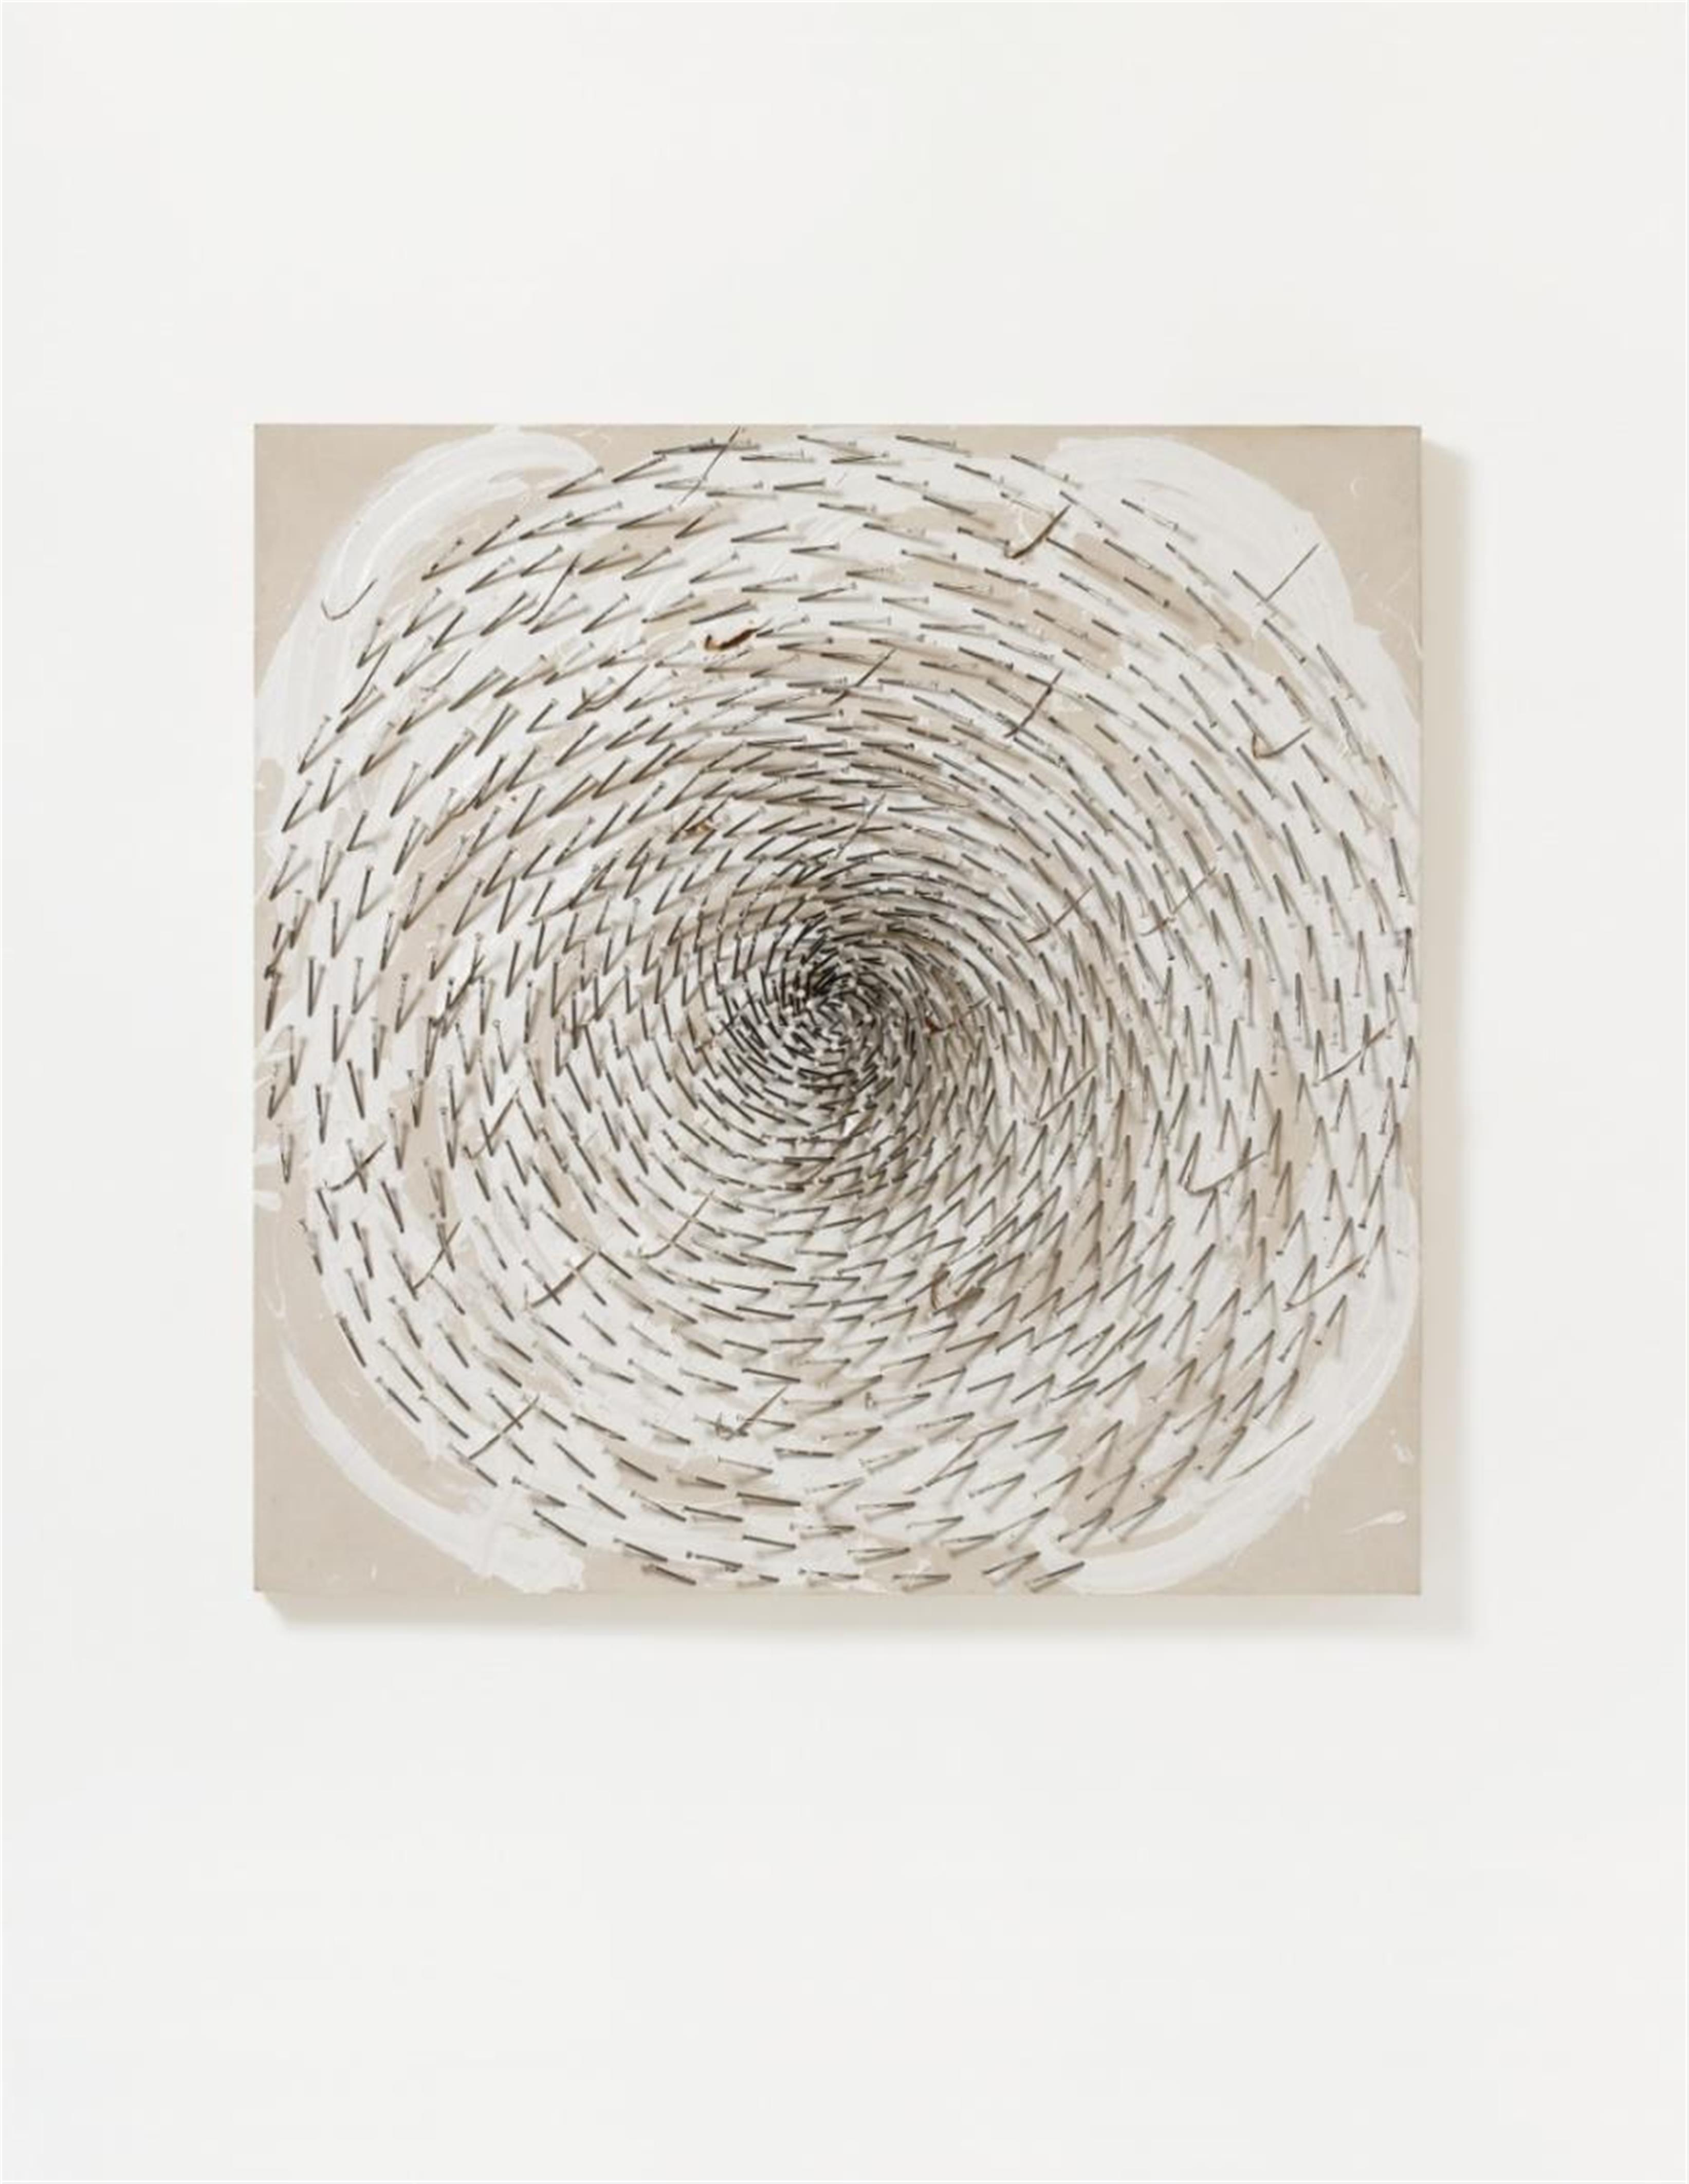 Günther Uecker - Weisse Spirale (white spiral) - image-1